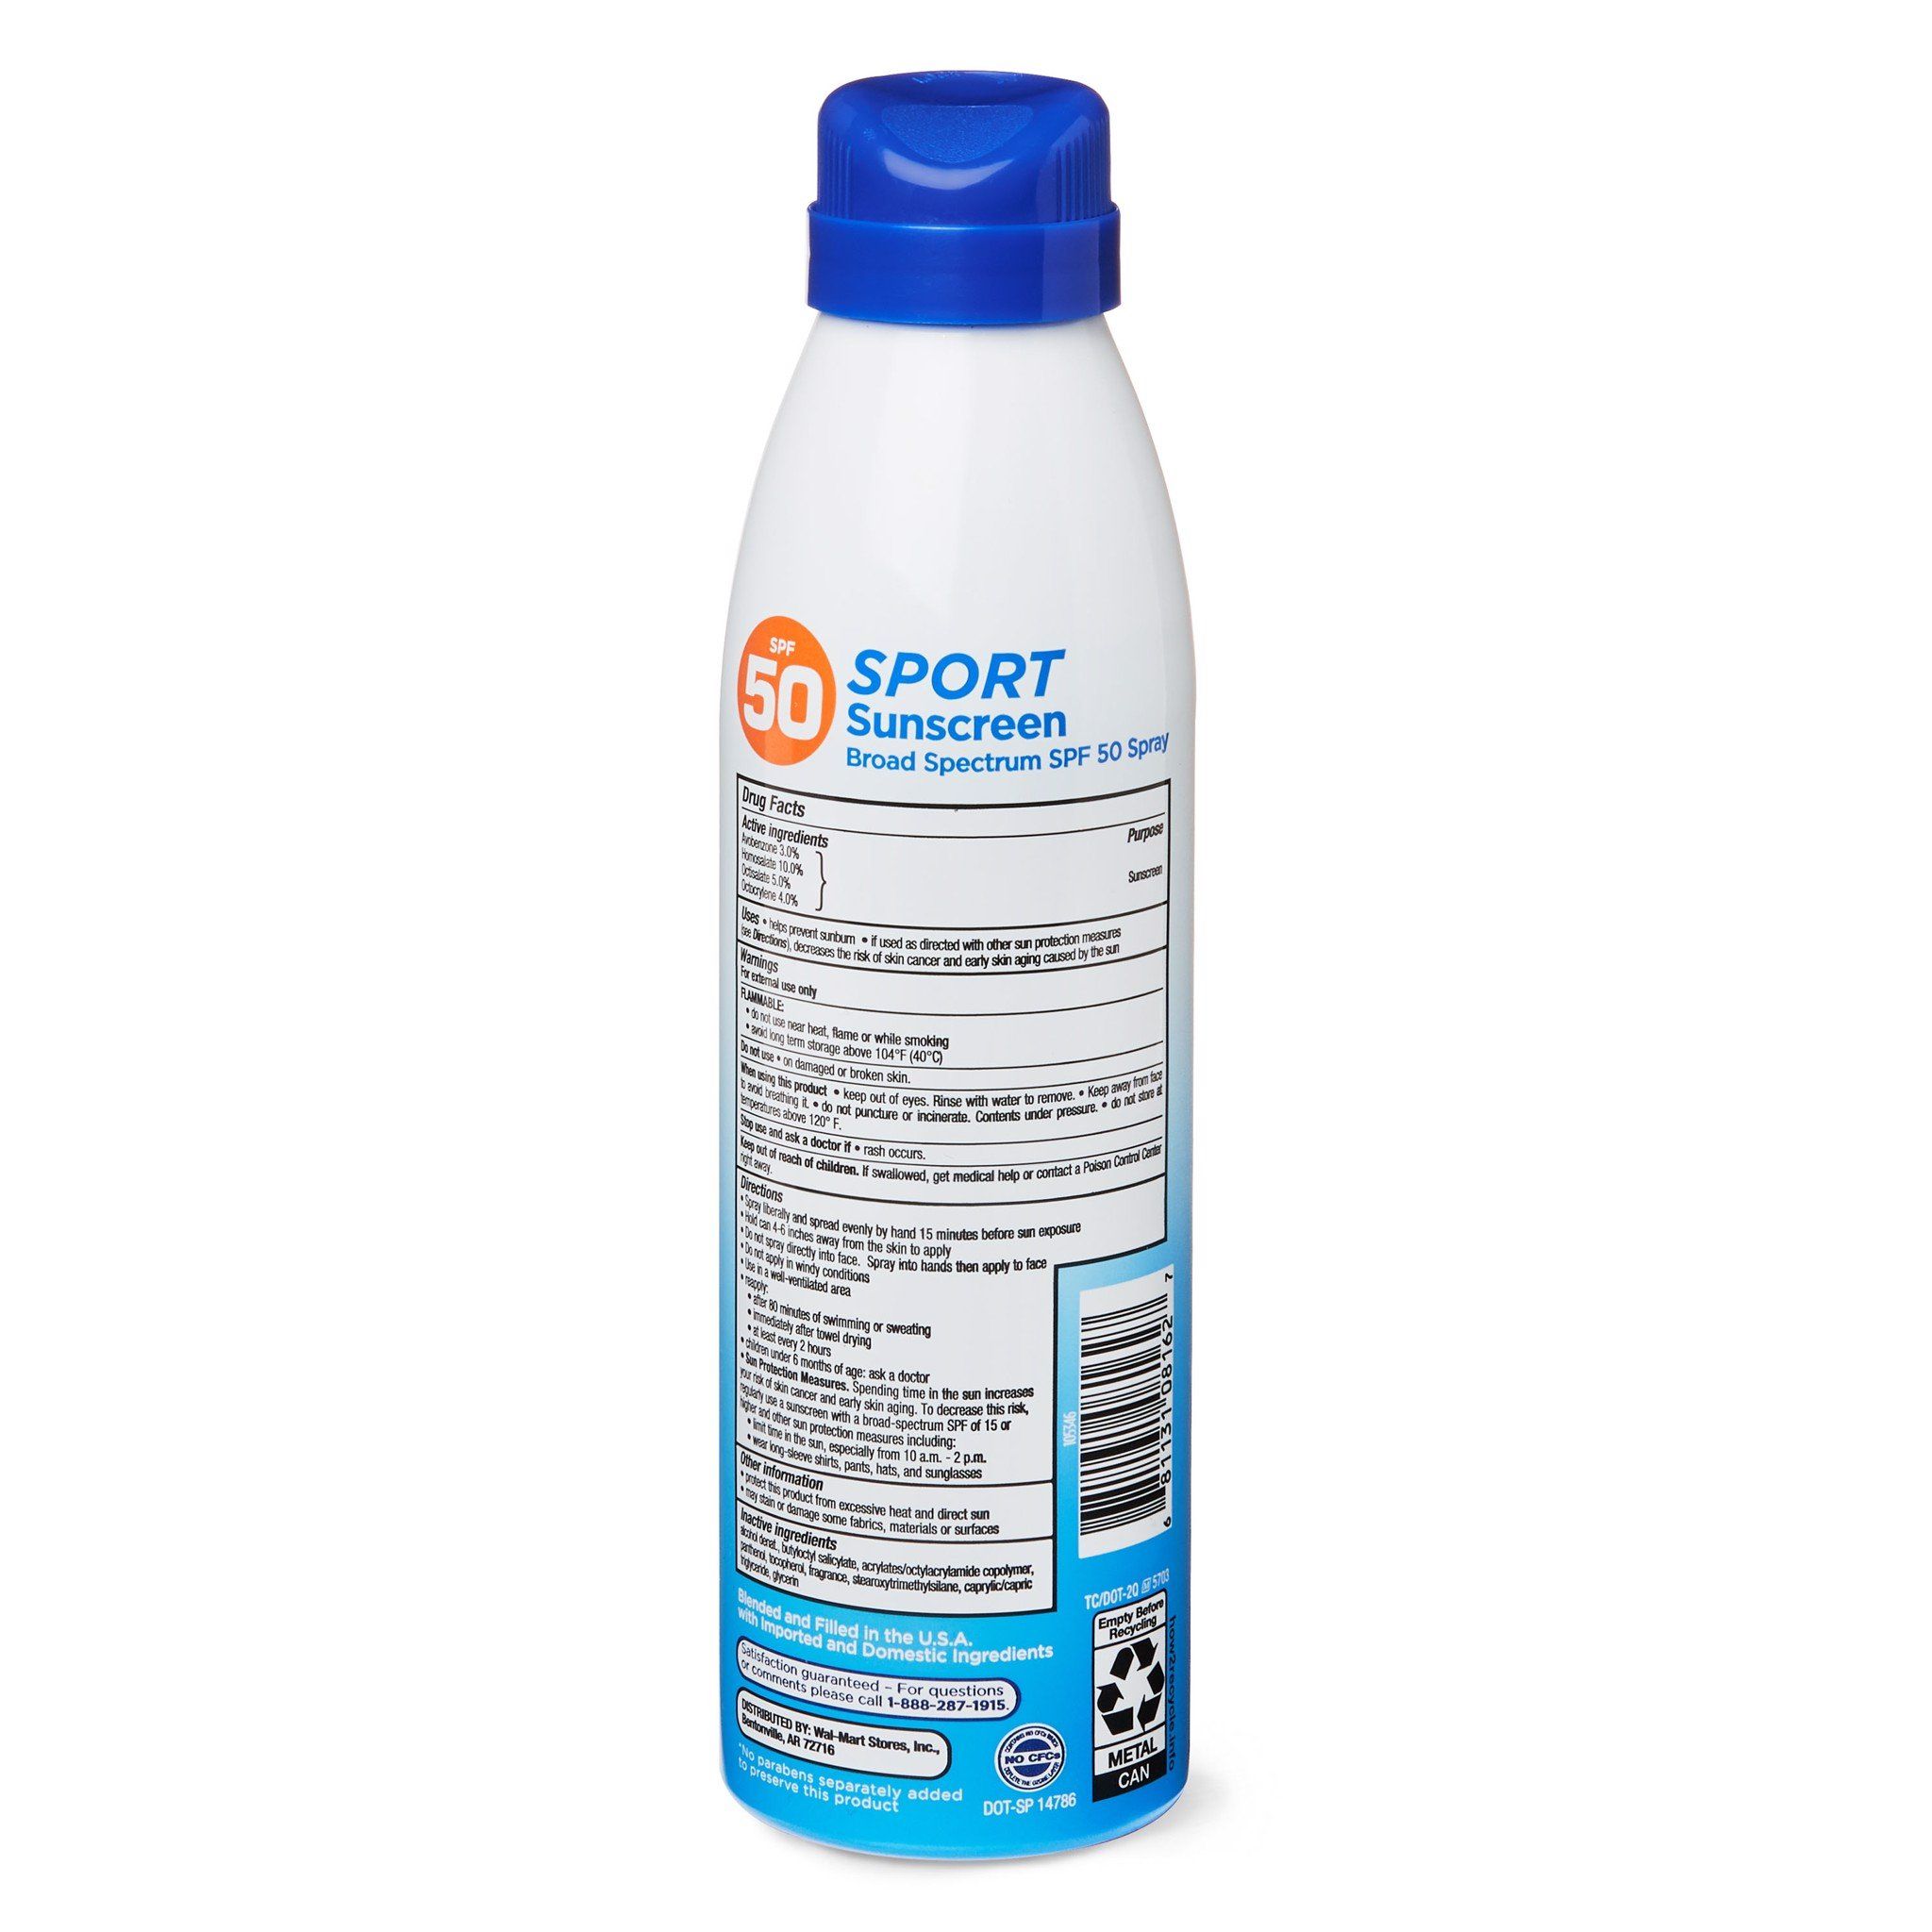  Xịt Chống Nắng Thể Thao Equate Sport Broad Spectrum Sunscreen, SPF 50, 5.5 oz [Chai 156g] Không trôi, thích hợp đi biển, đi bơi, chơi thể thao 